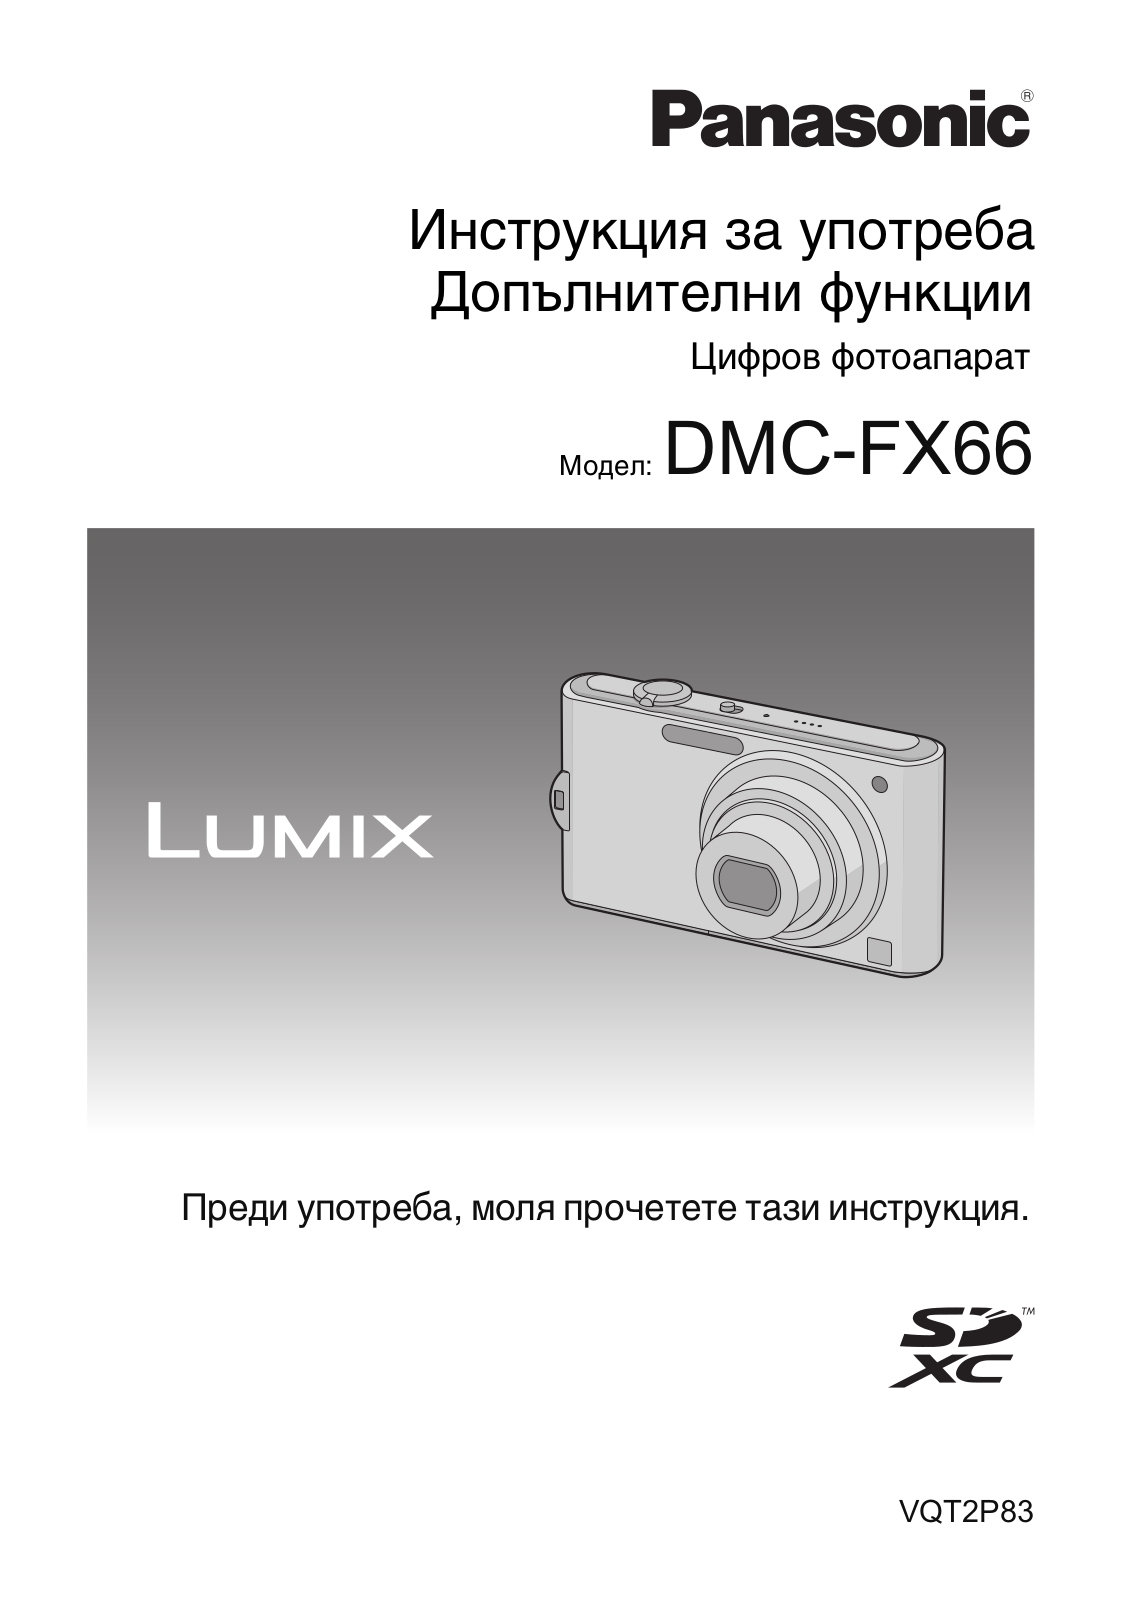 PANASONIC DMCFX66 User Manual